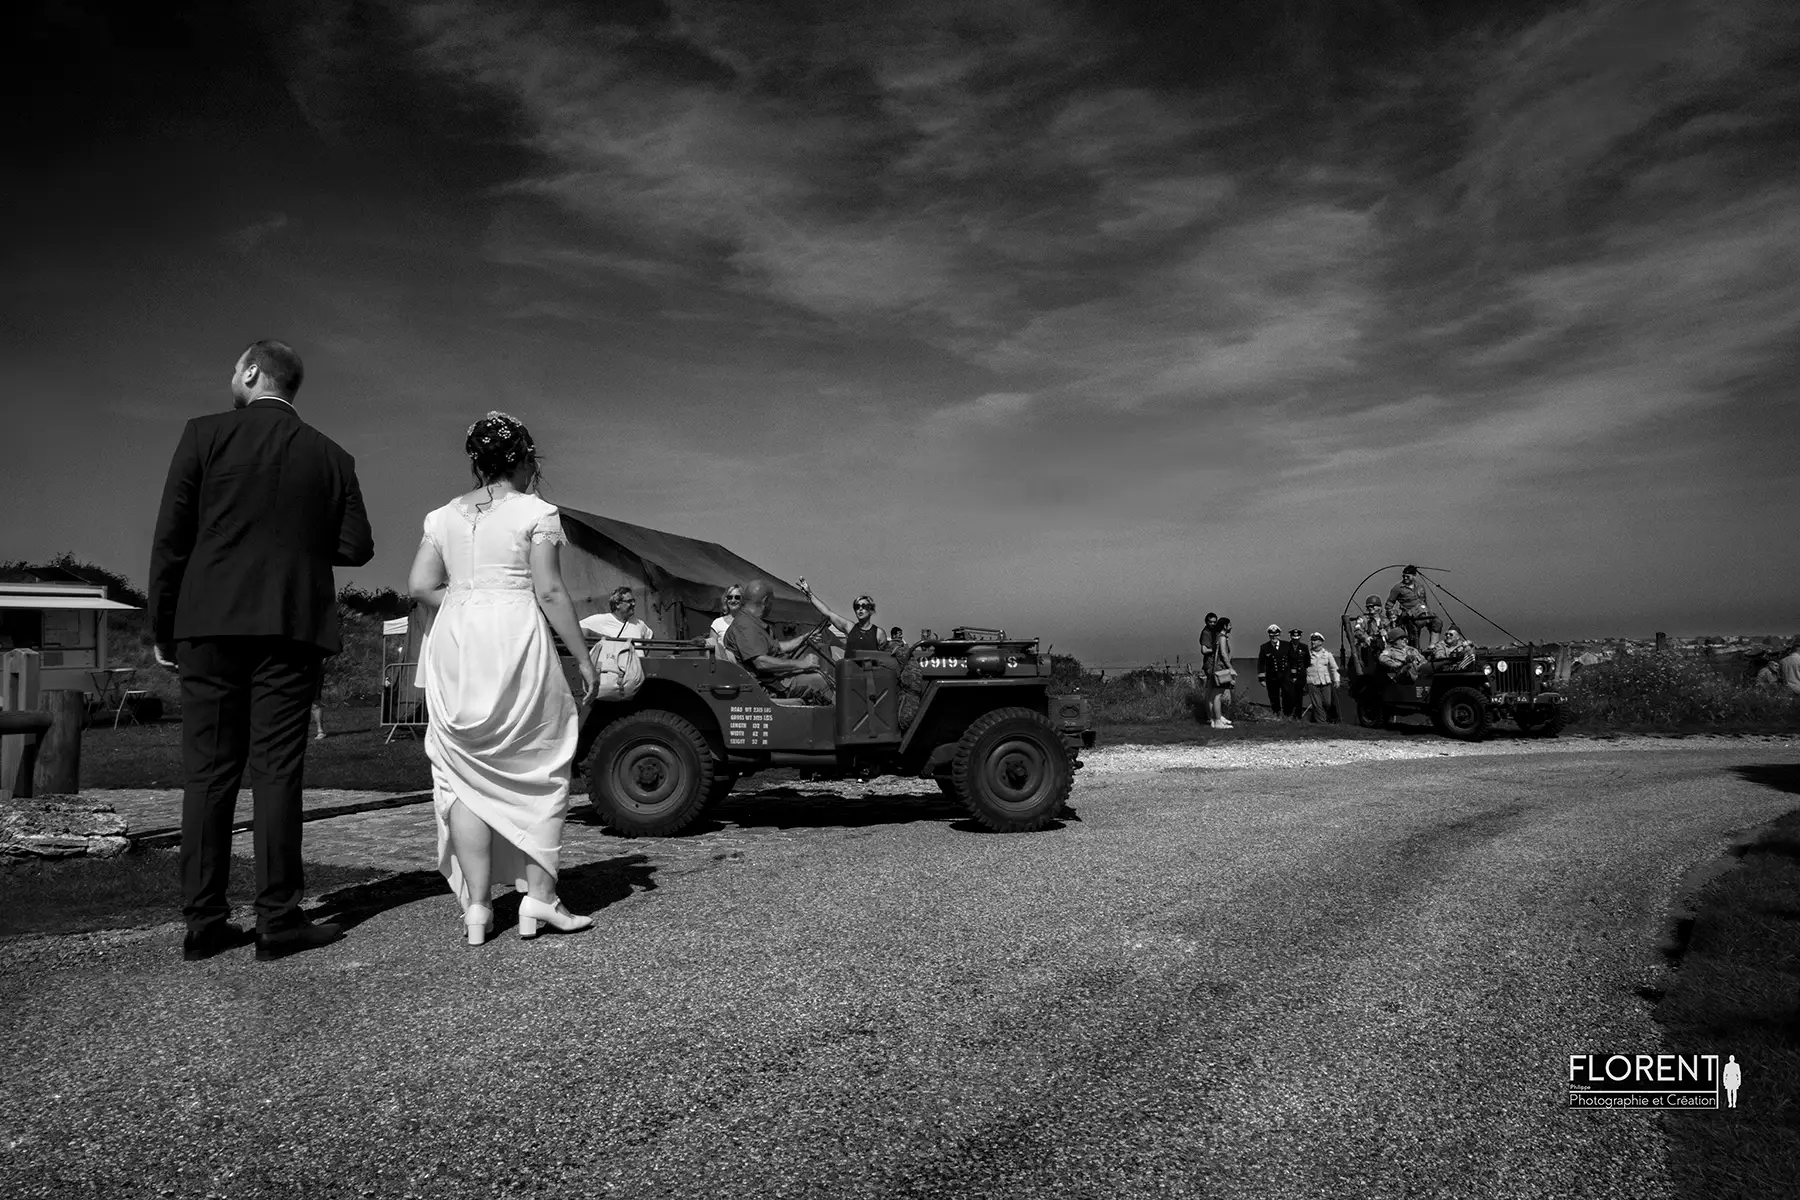 mariage photo superbe maries dans un camp guerre 39 45 avec jeep florent studio photographe calais boulogne sur mer lille le touquet paris saint omer